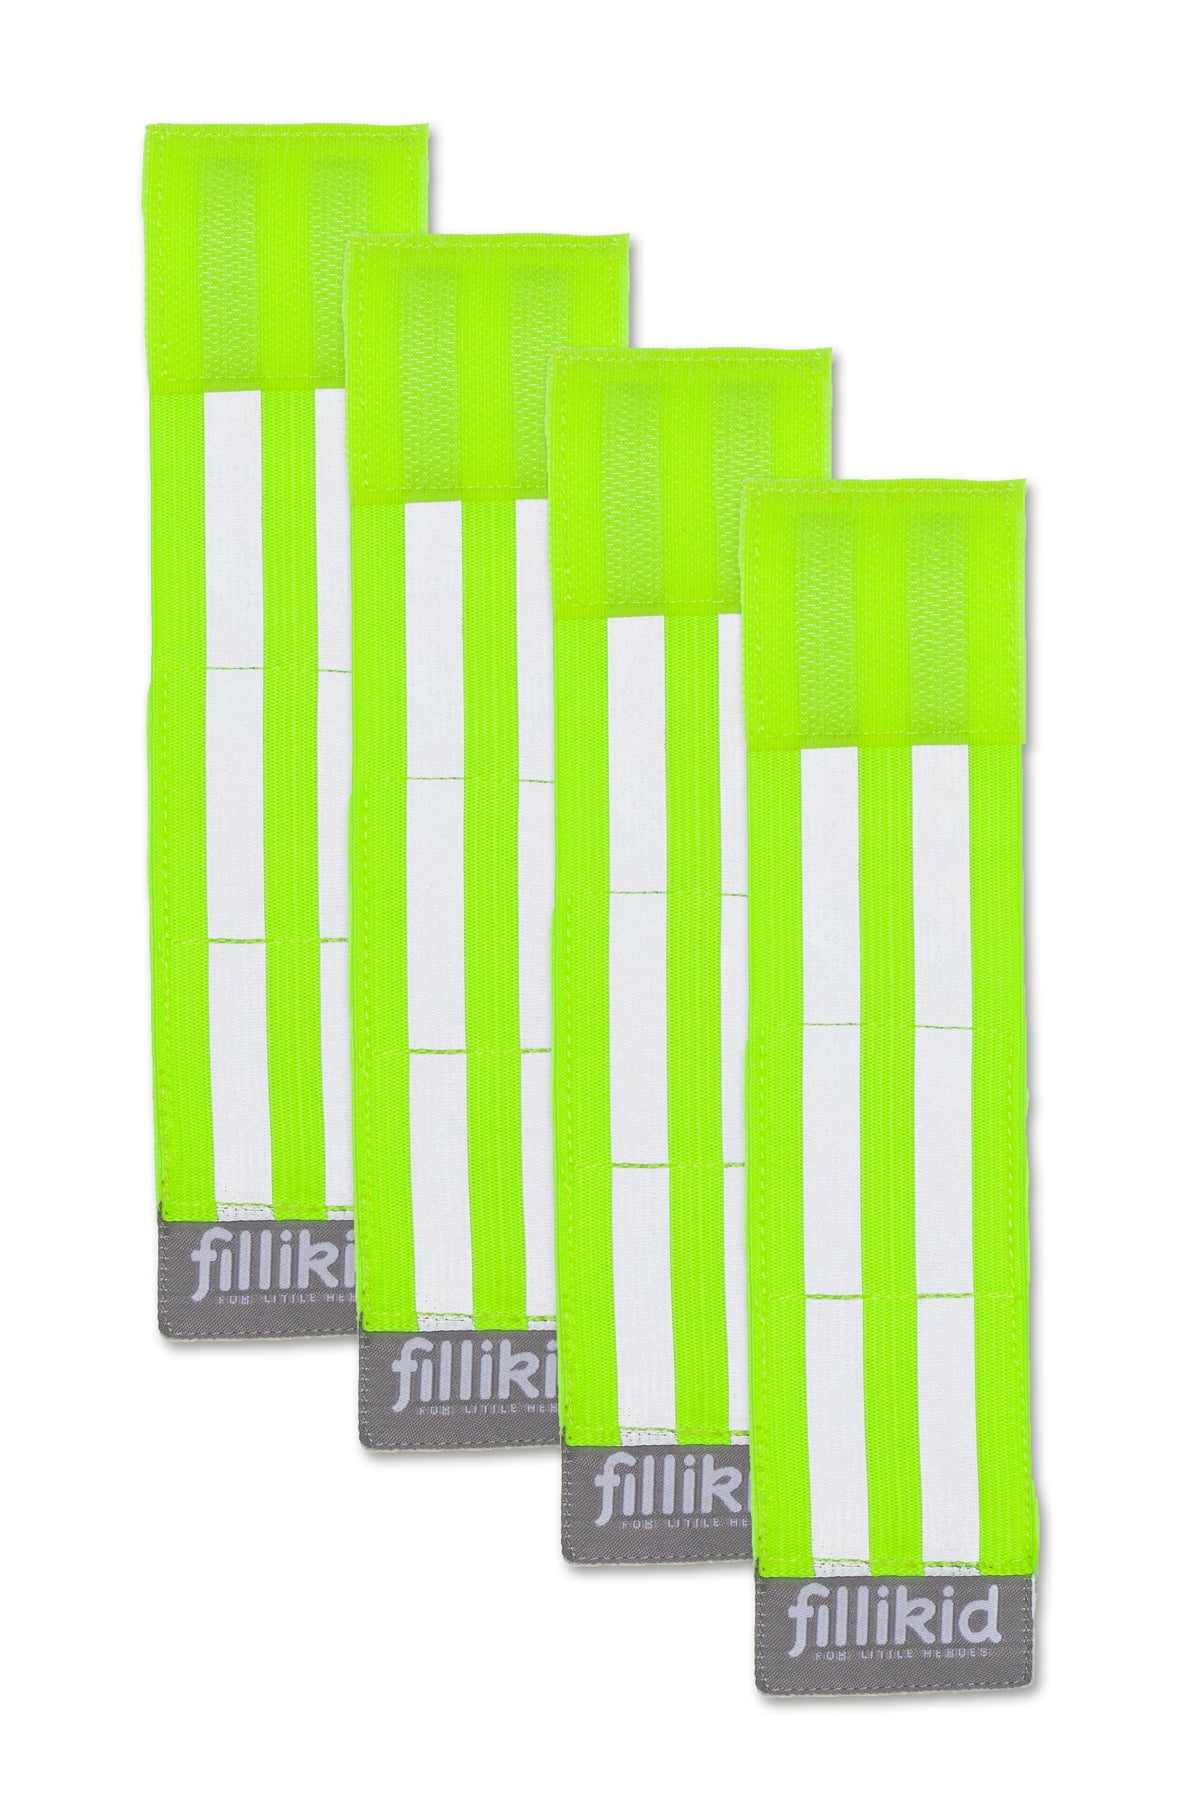 Fillikid Reflektorband neon 4 Stück